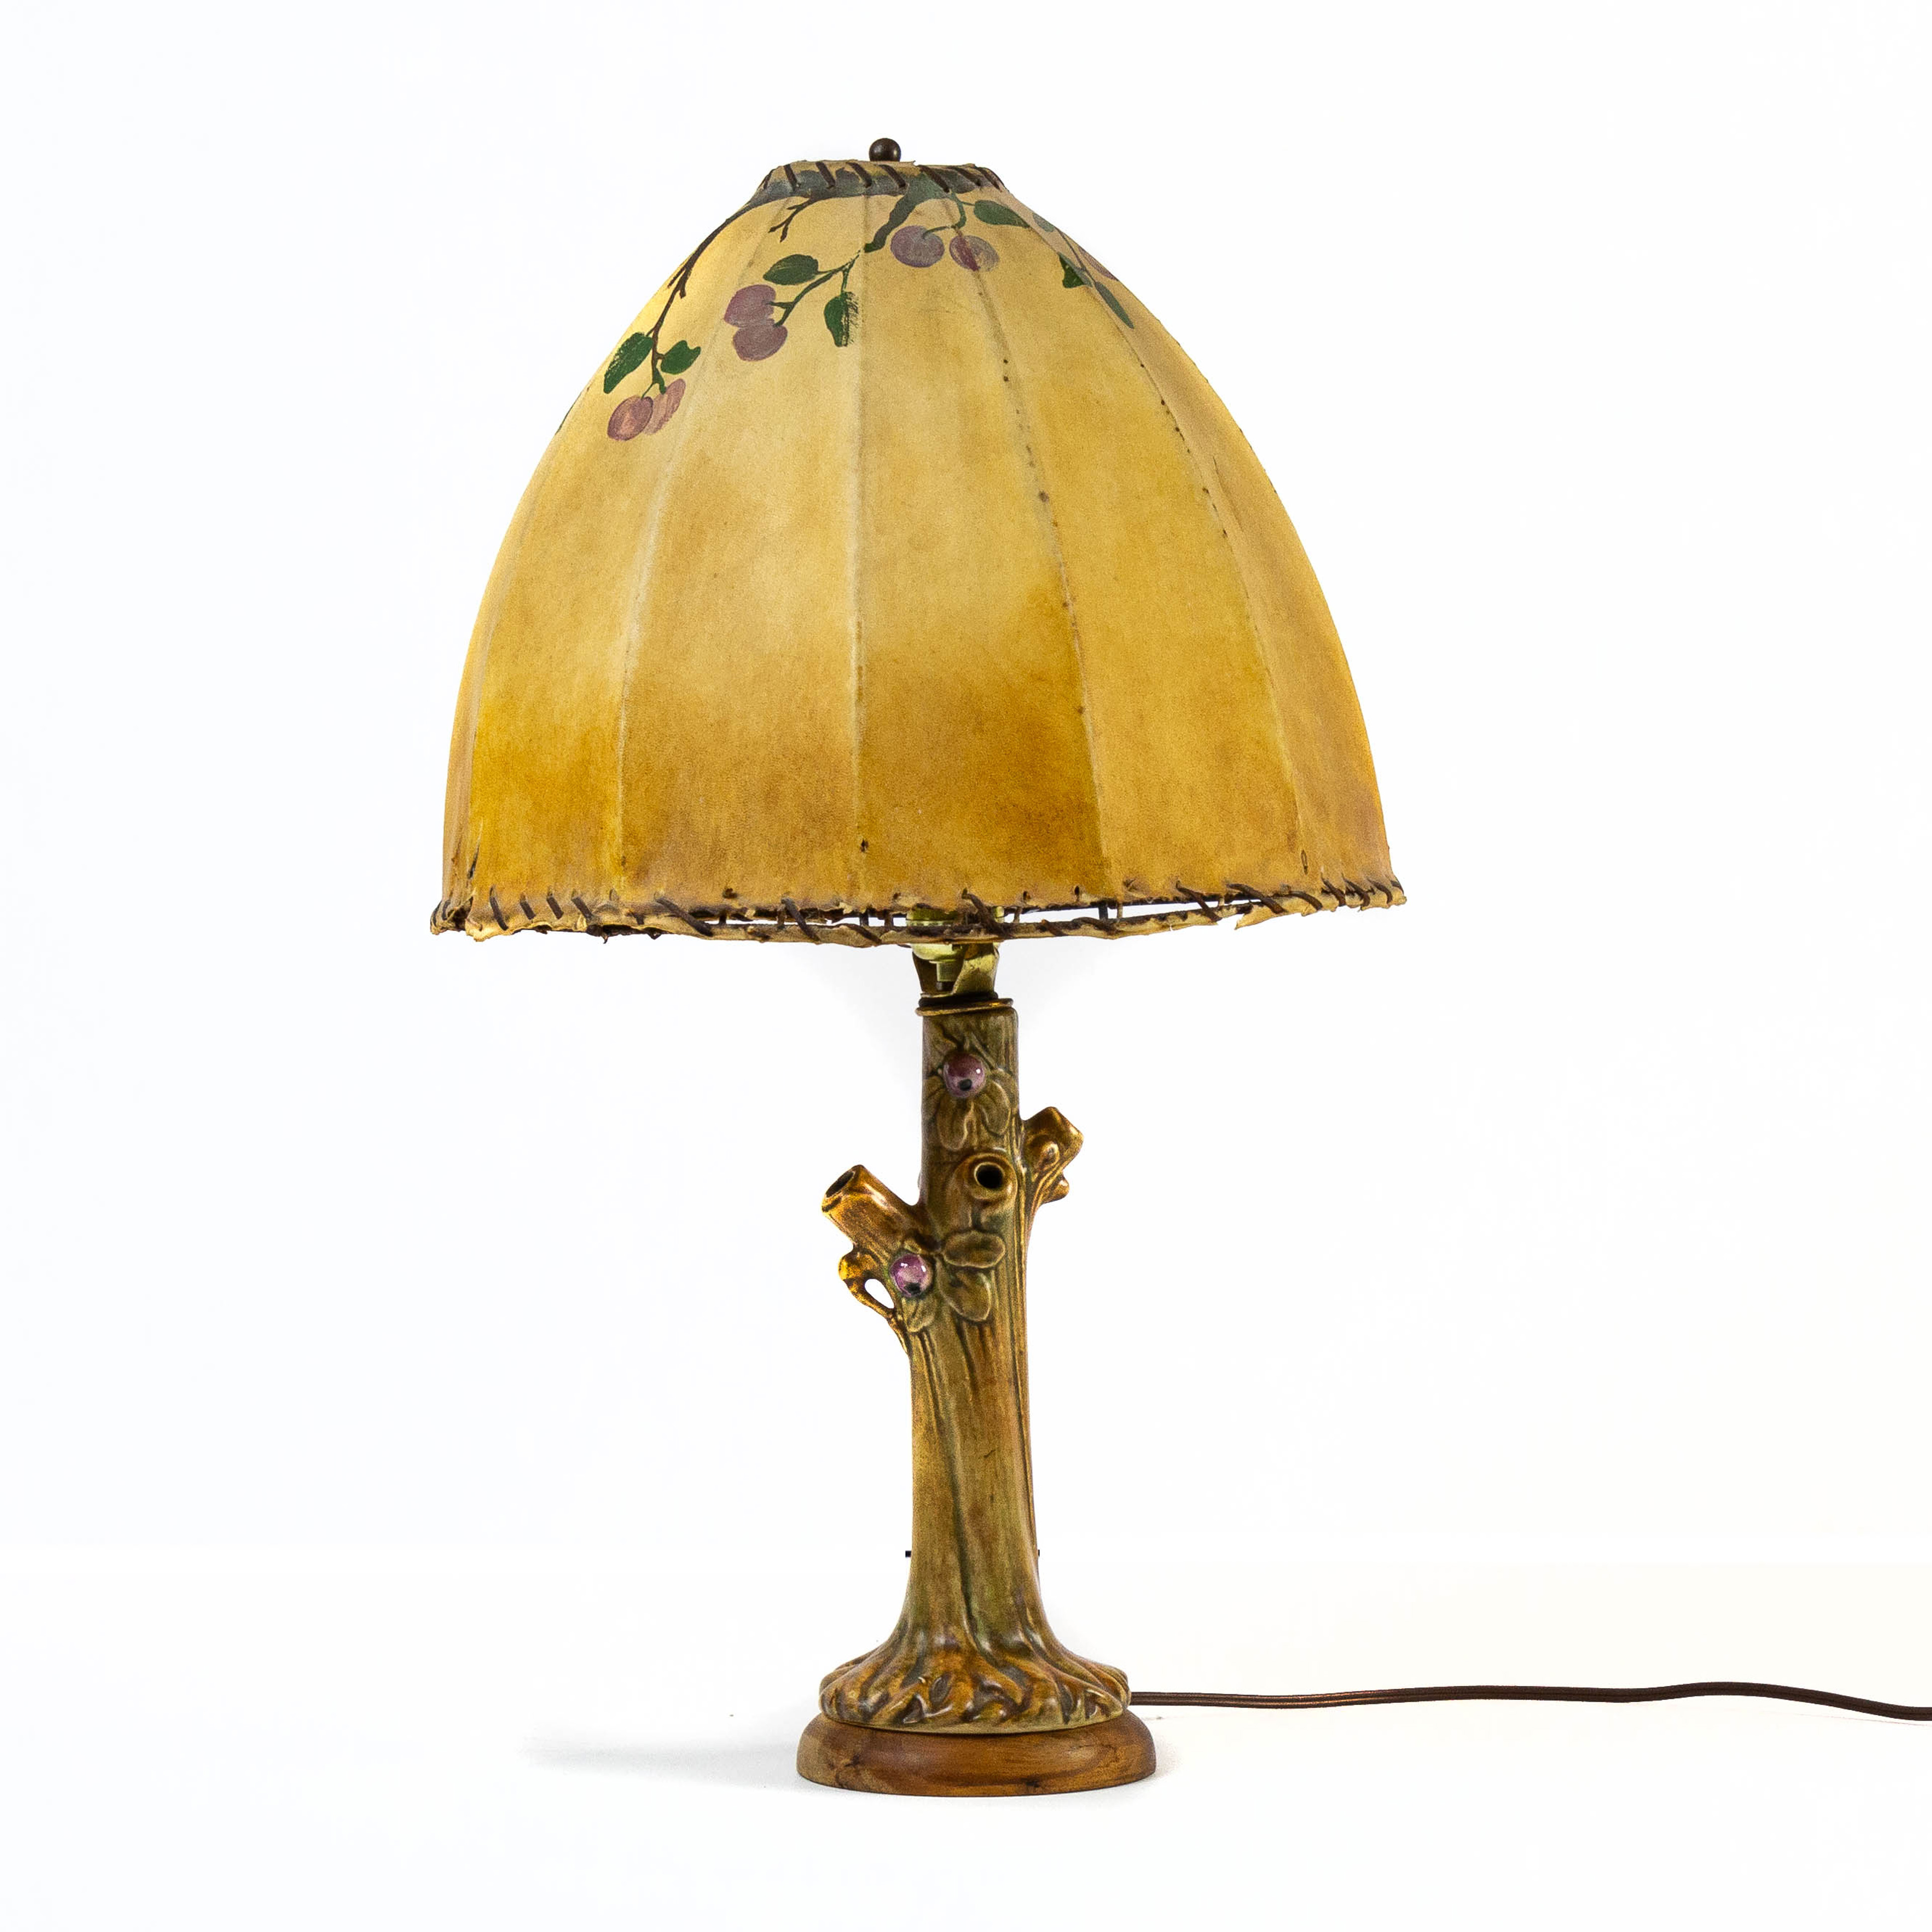 A WELLER LAMP A Weller lamp, retains